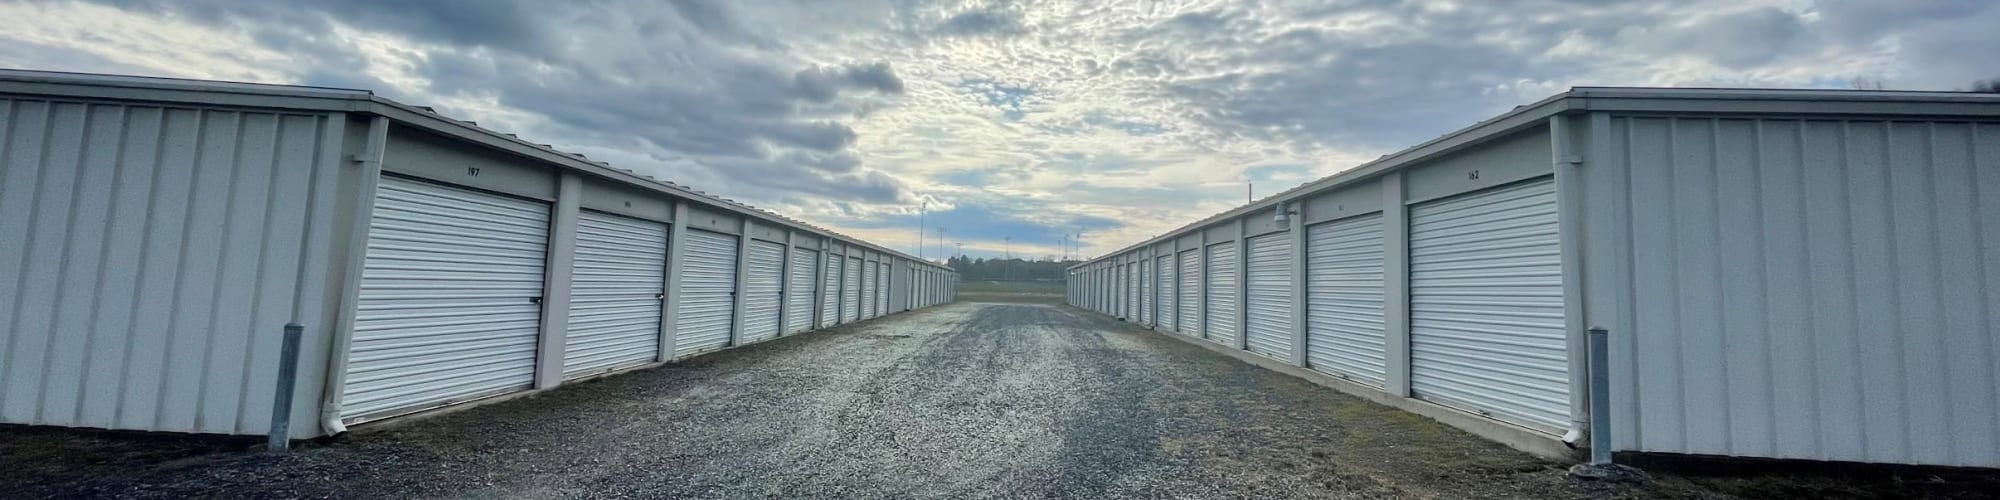 Reviews of KO Storage in Berkeley Springs, West Virginia